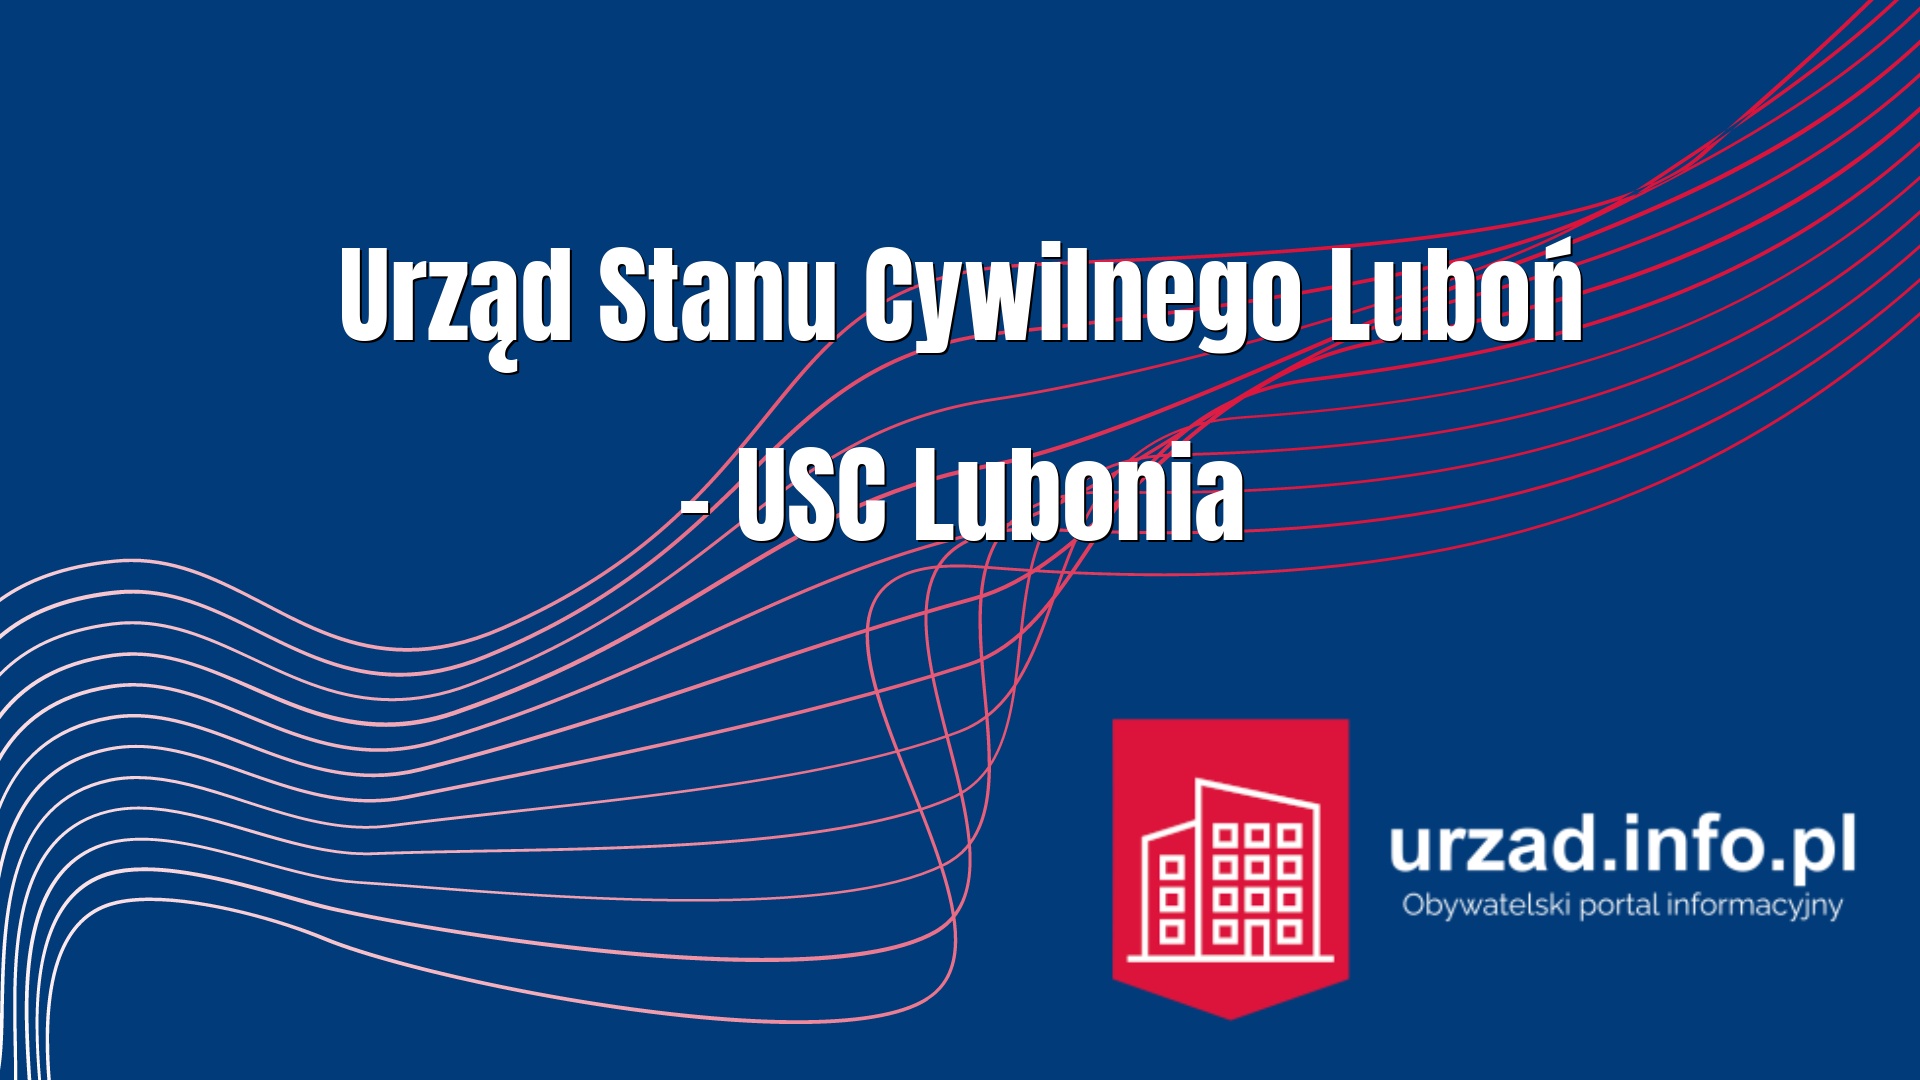 Urząd Stanu Cywilnego Luboń – USC Lubonia